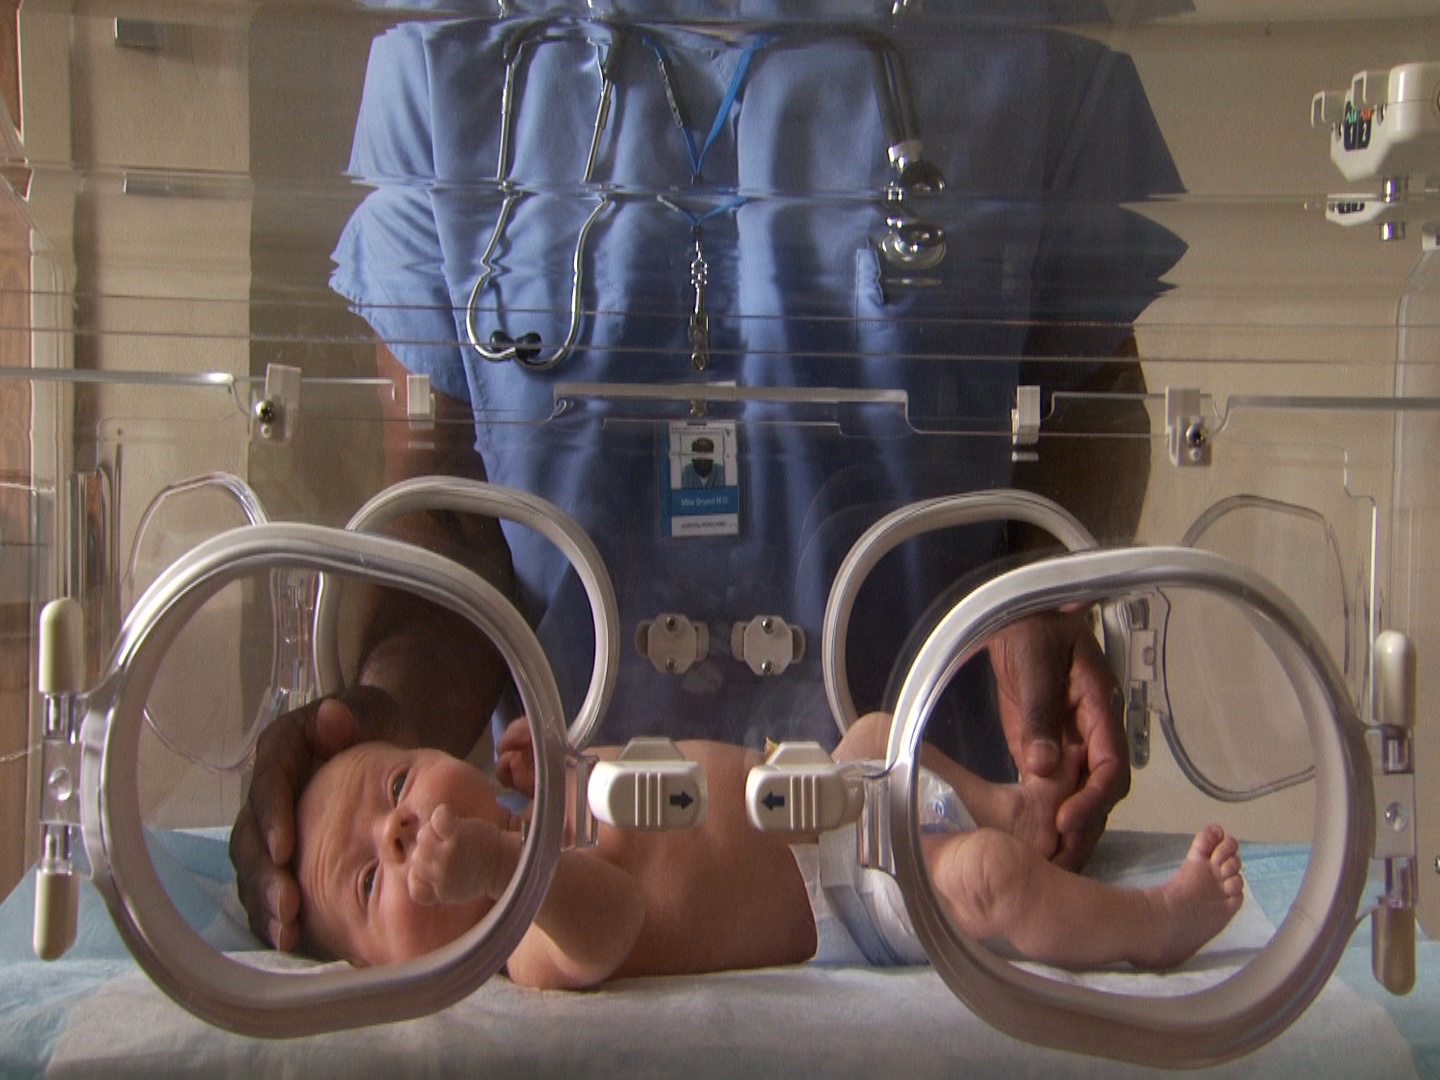 男医护人员在孵化器中爱抚新生儿视频下载